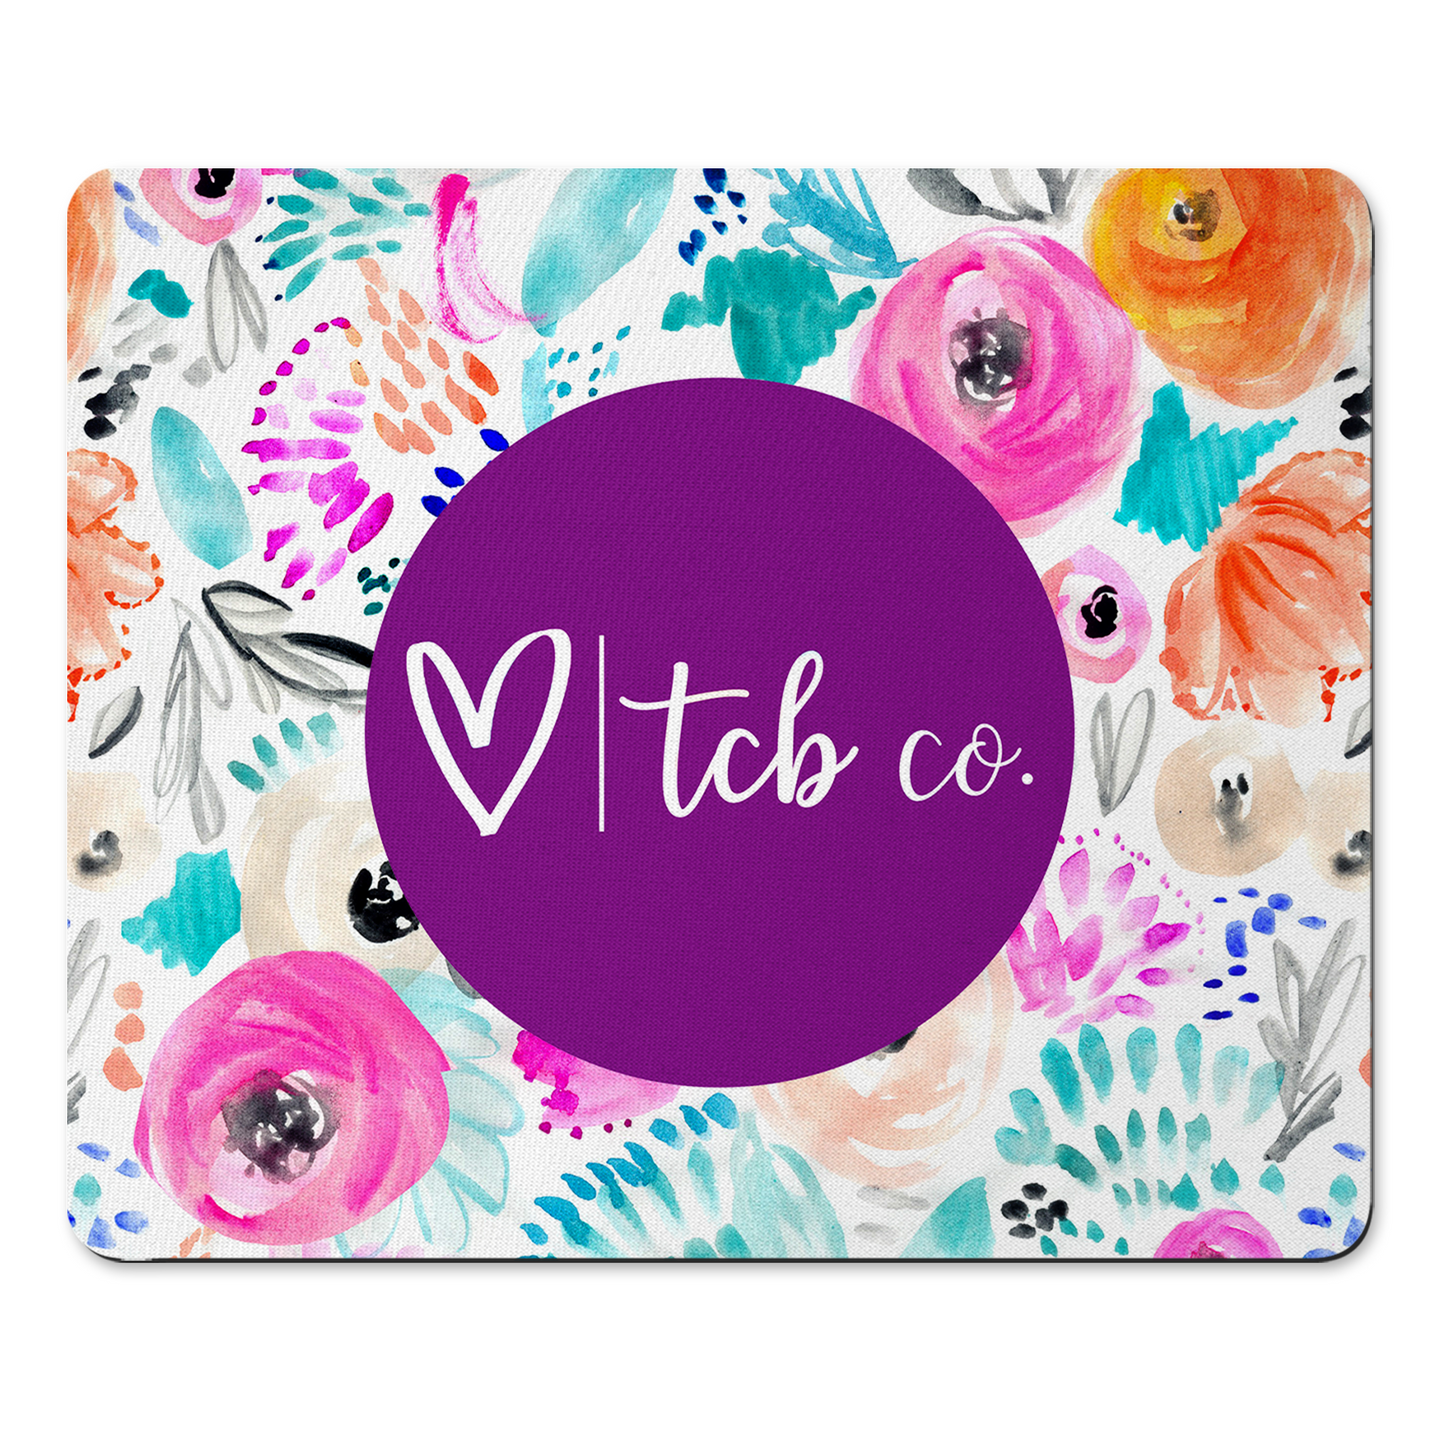 TCB Co Mousepad & Coaster Set